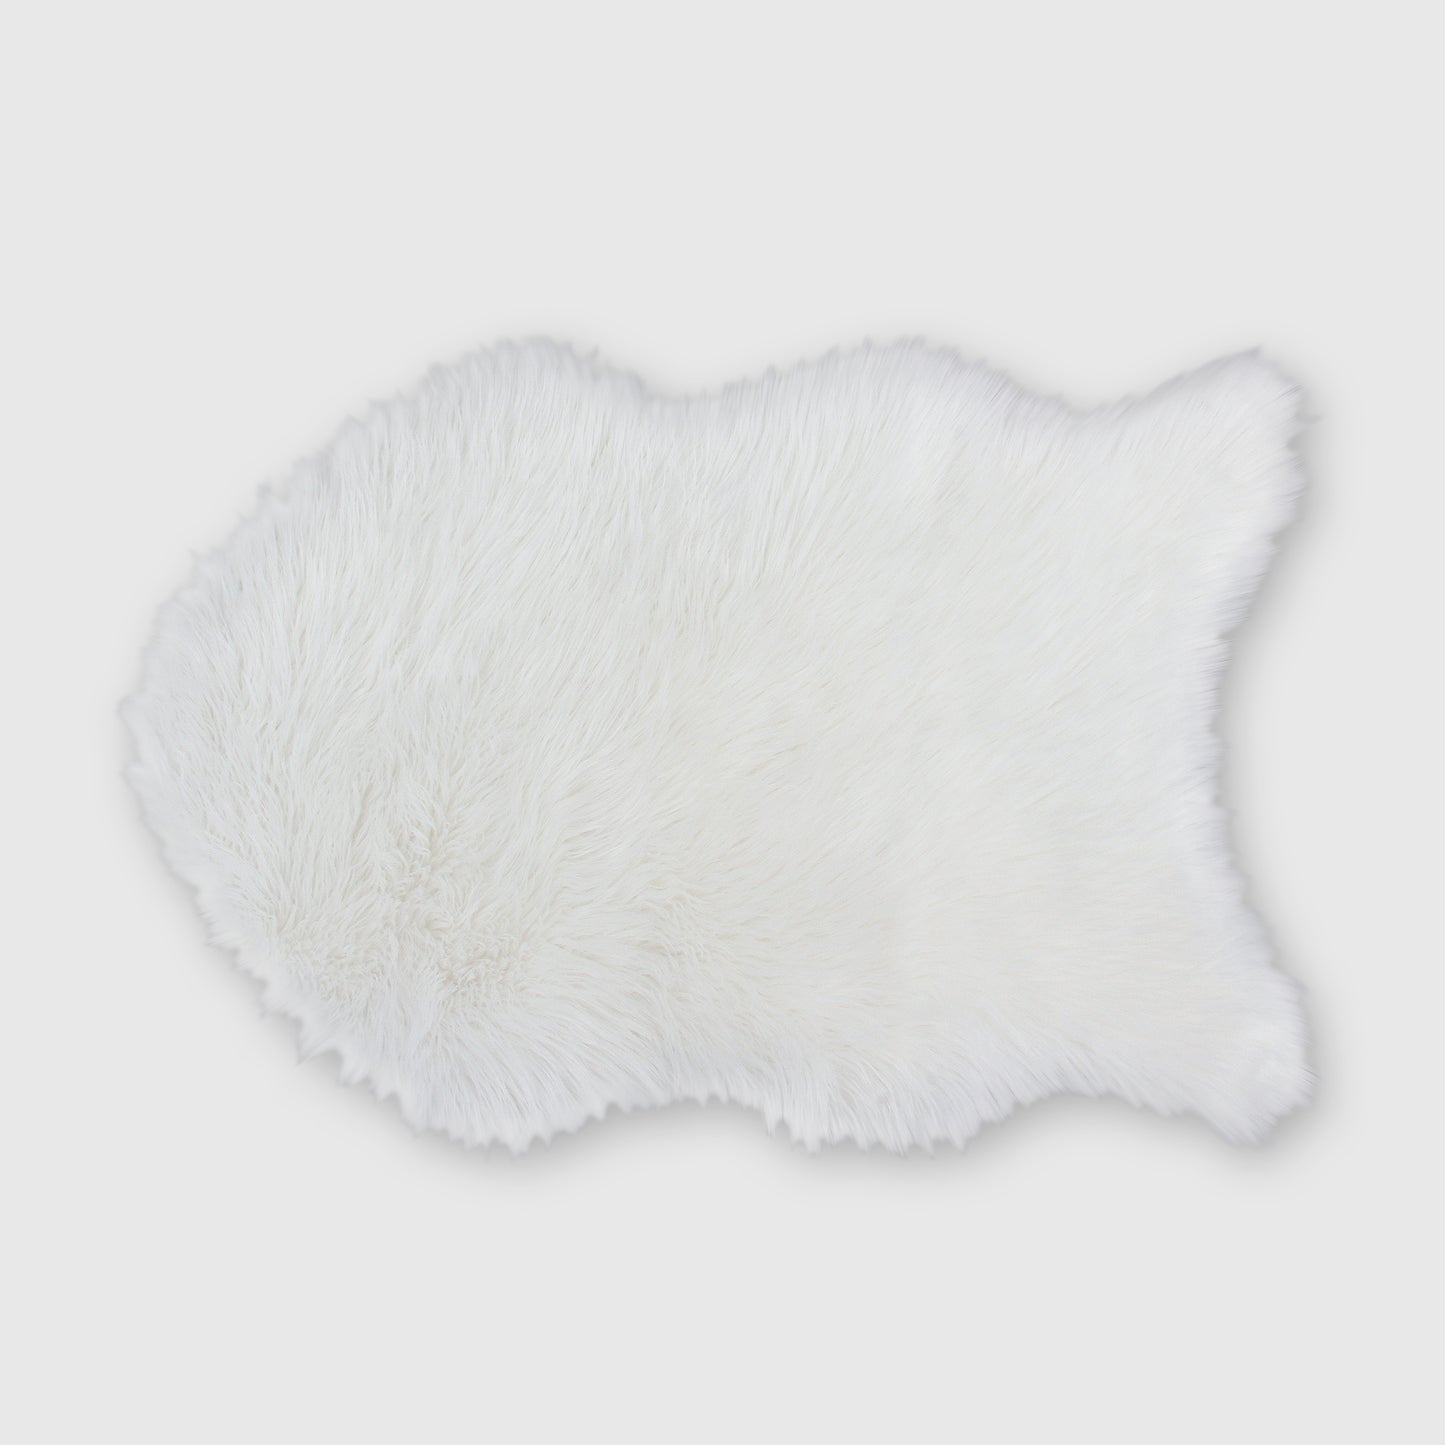 The Mood | Harris Faux Fur 2'x3' Rug, White